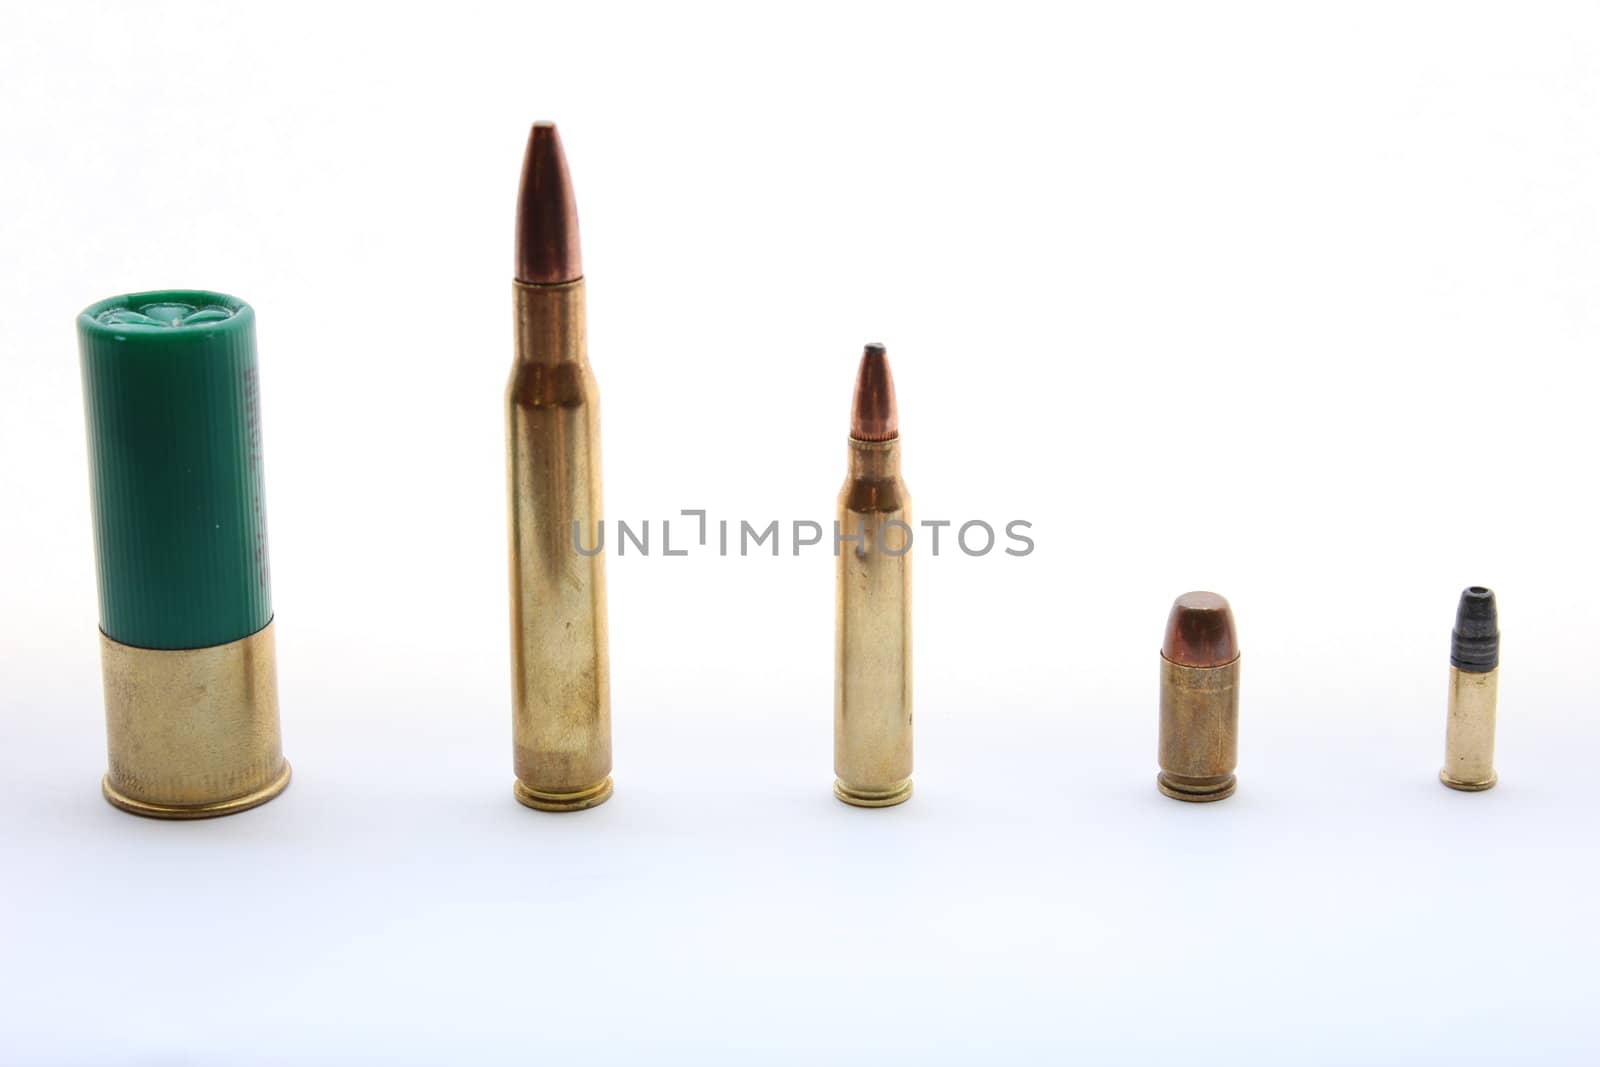 00 shotgun shell, .306, .223, 380, .22 caliber bullets.